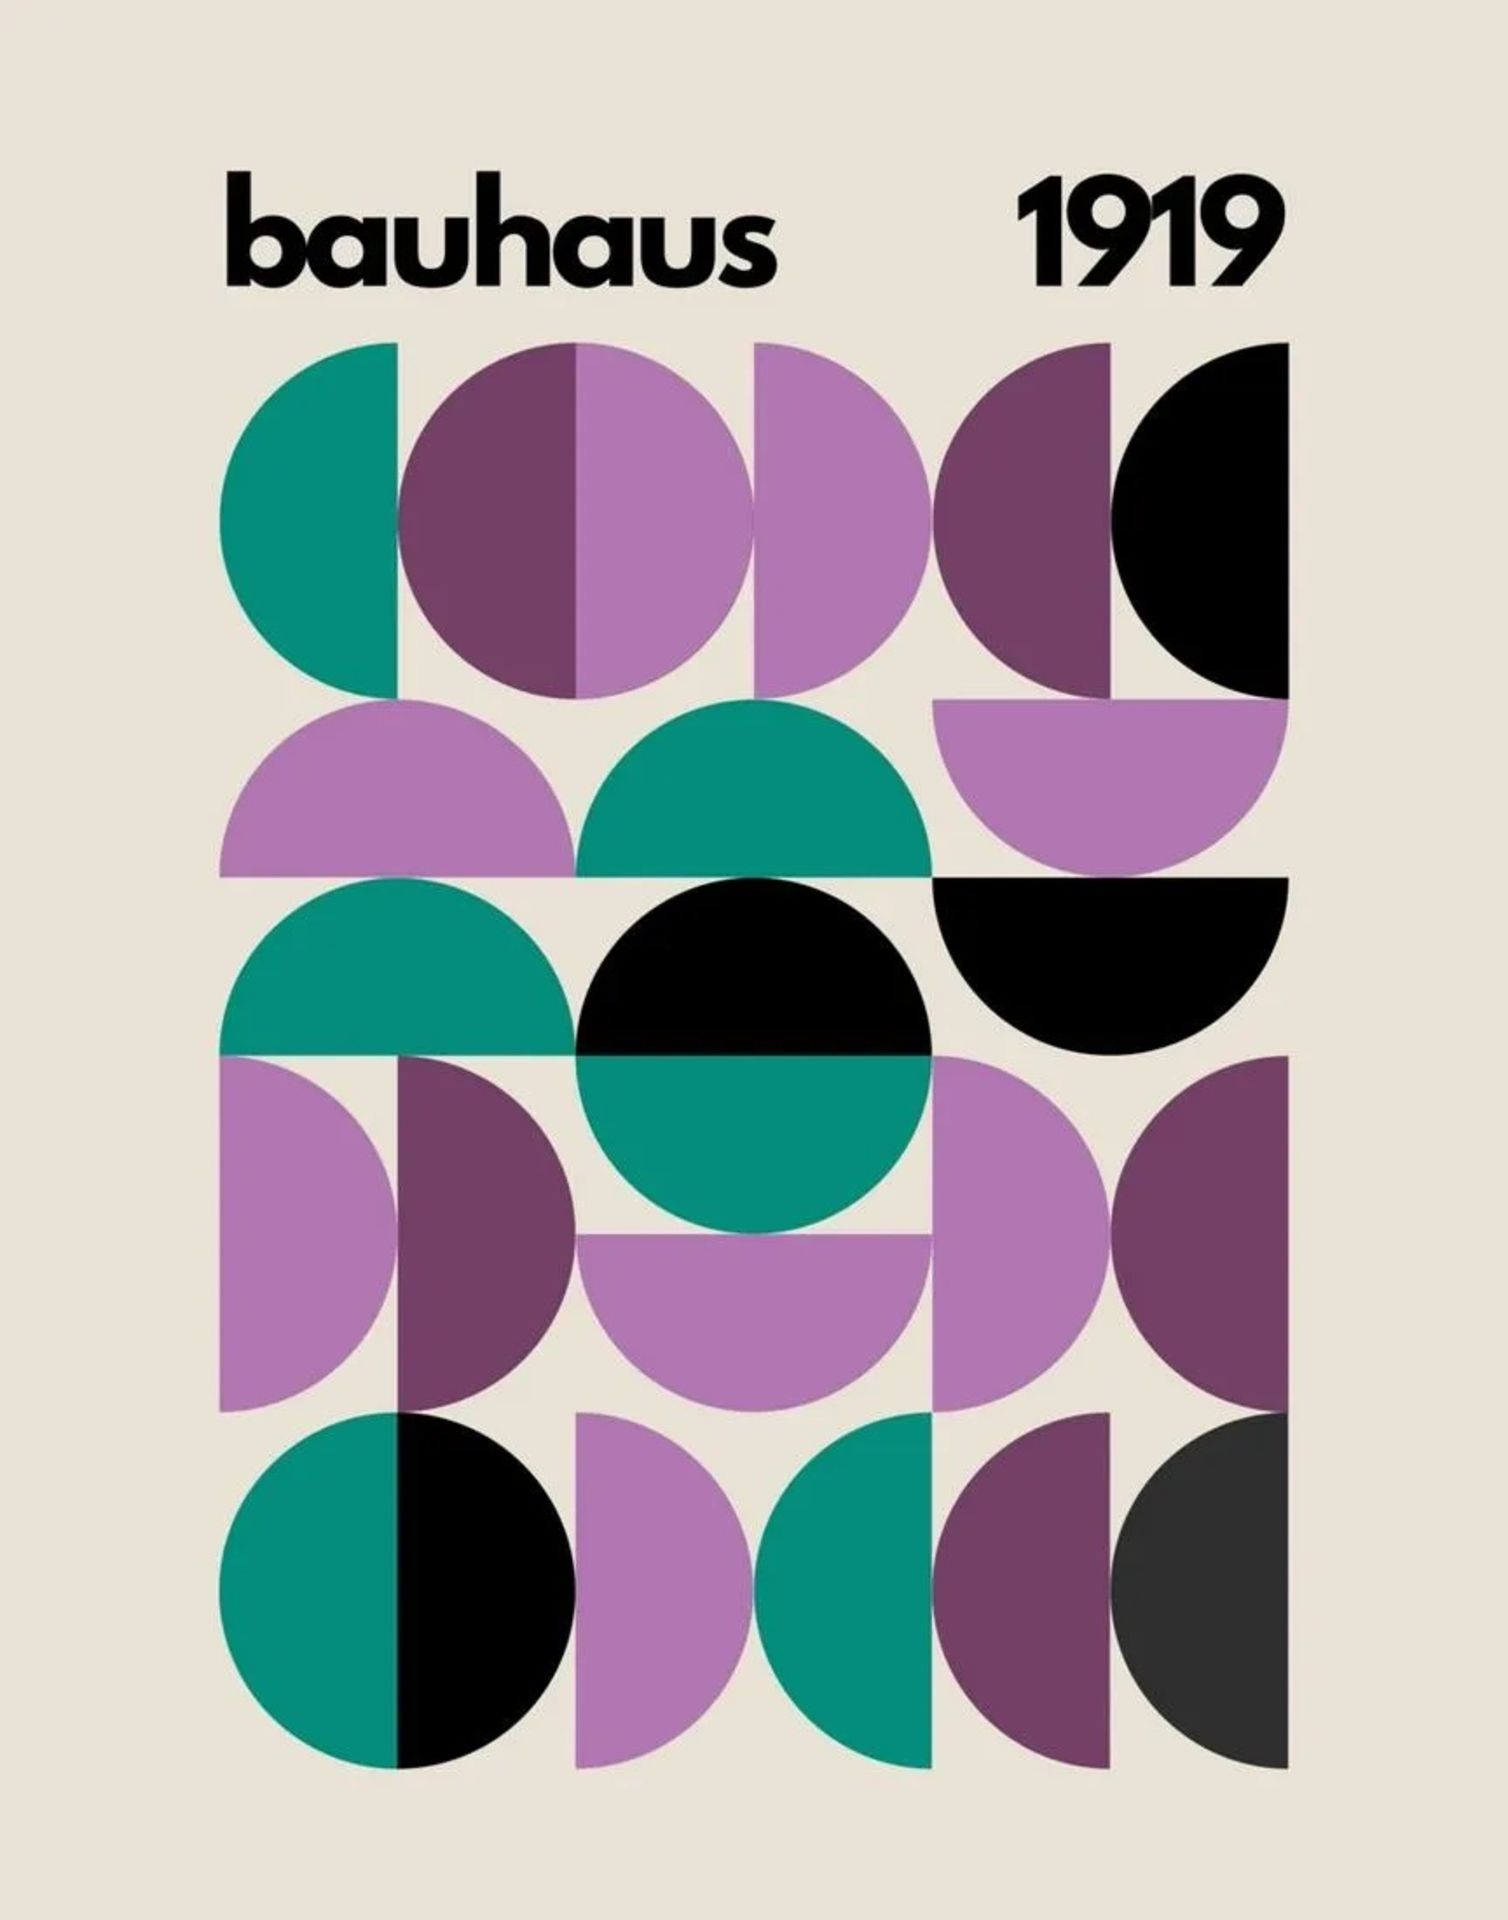 Bauhaus "1919" Print